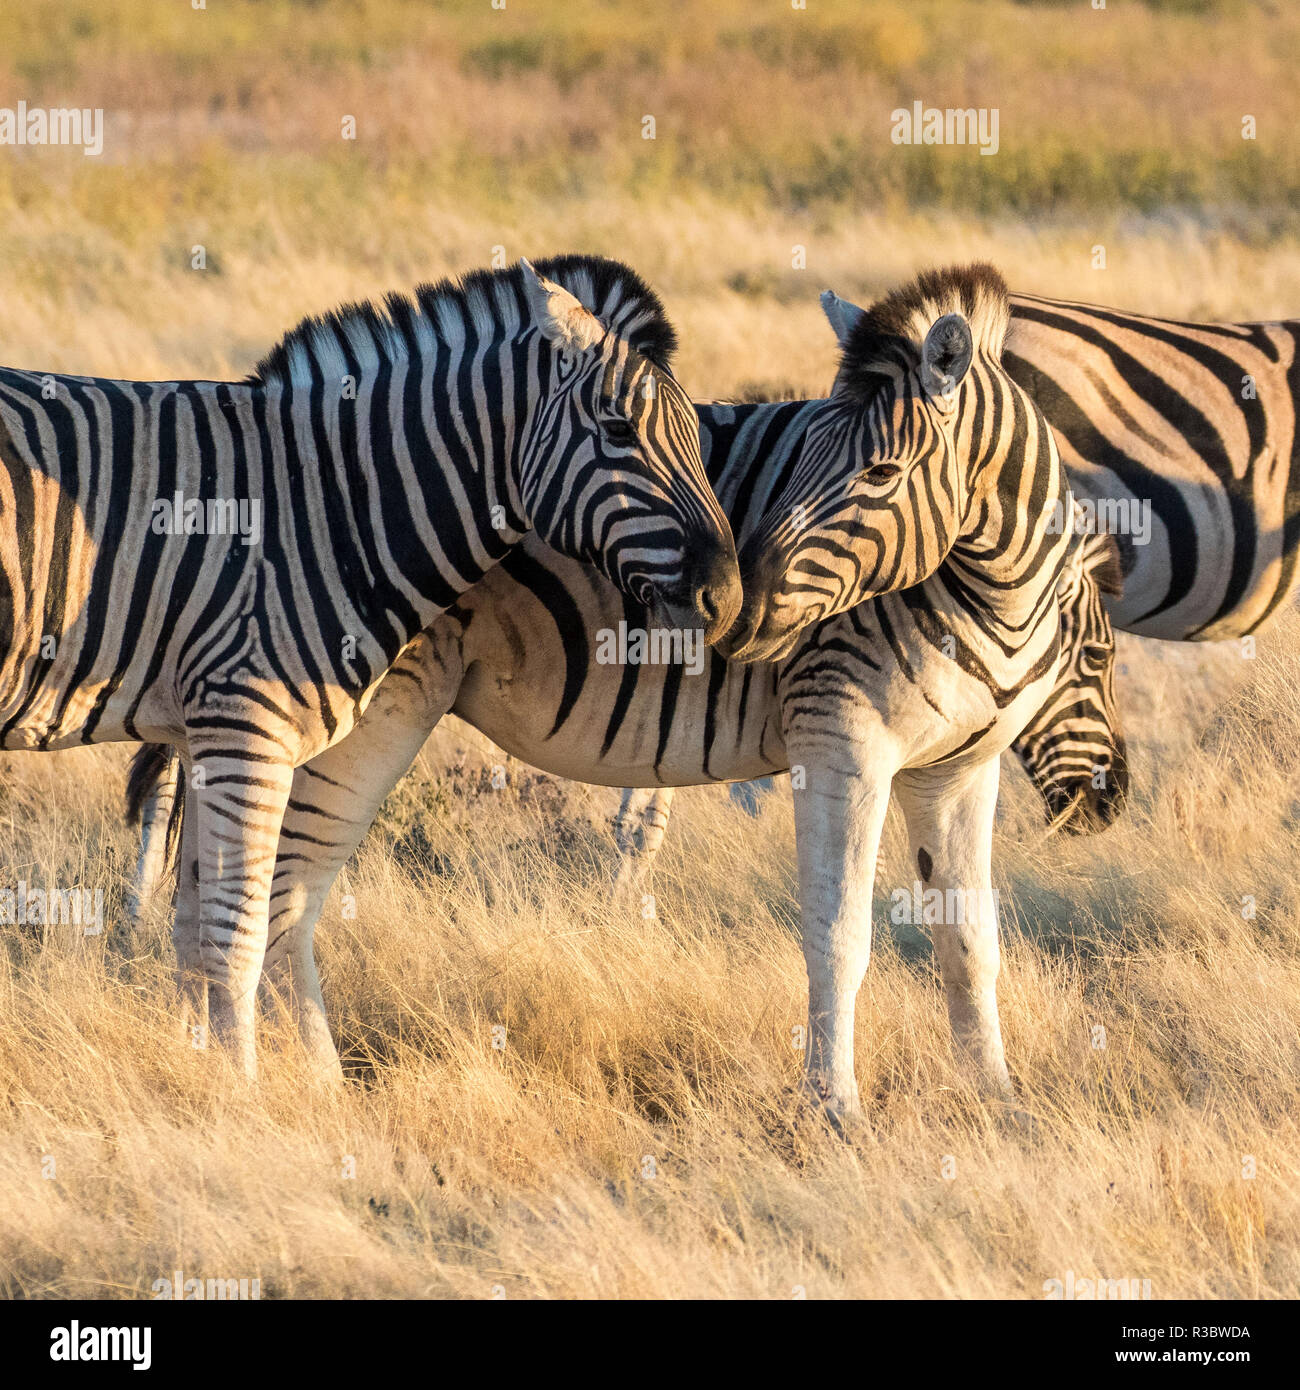 Afrika, Namibia, Etosha National Park, ein Paar Zebras Stockfoto